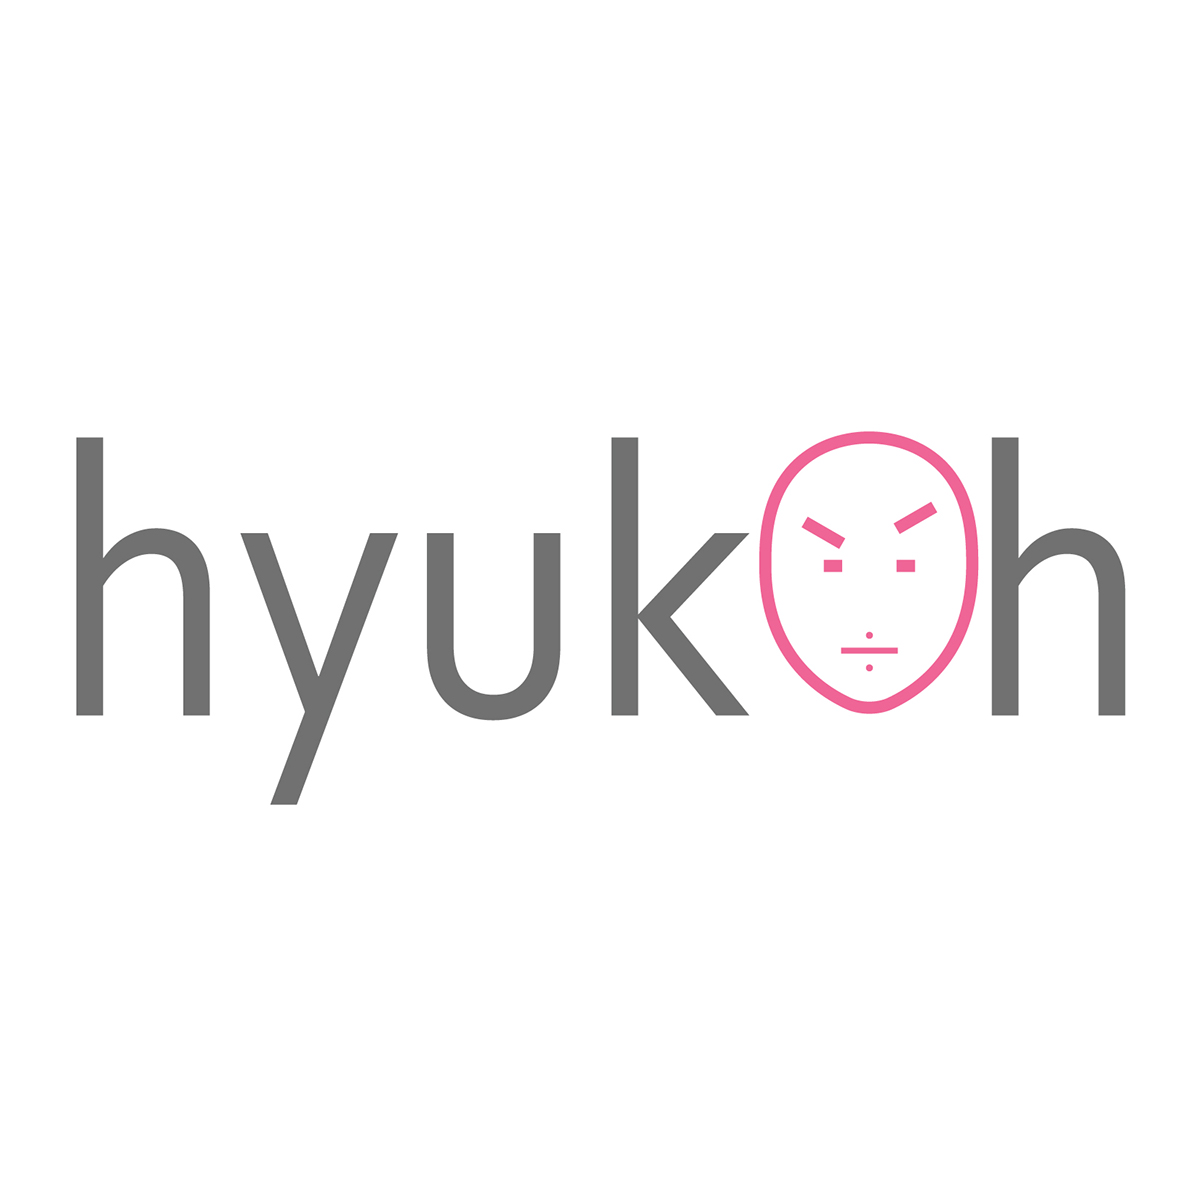 hyukoh album art Web Icon cd visual identity ILLUSTRATION  brand identity logo branding 